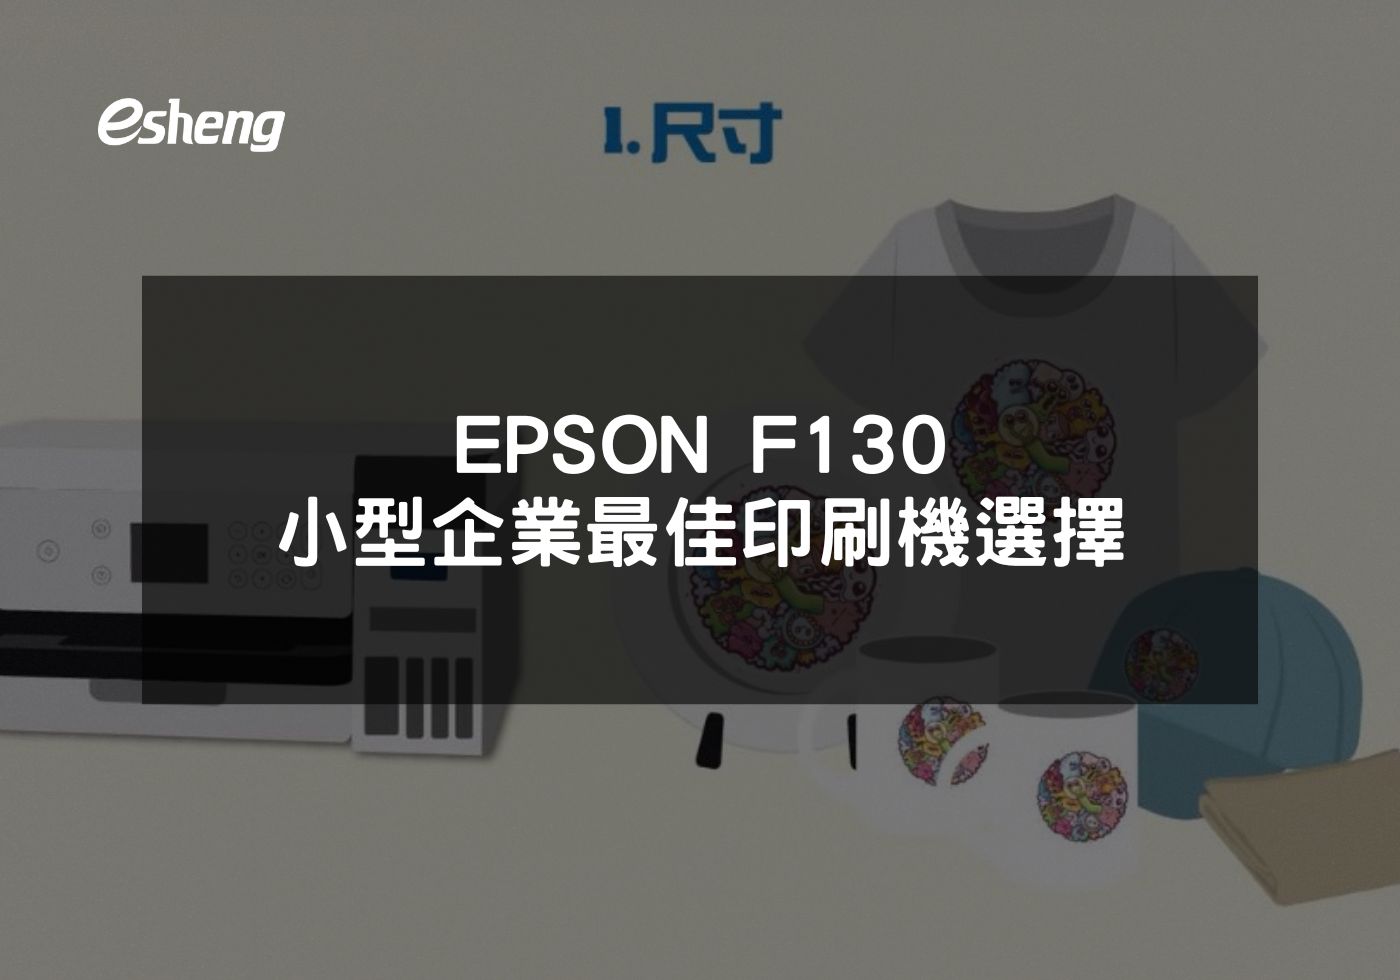 EPSON F130 小型企業最佳印刷機選擇